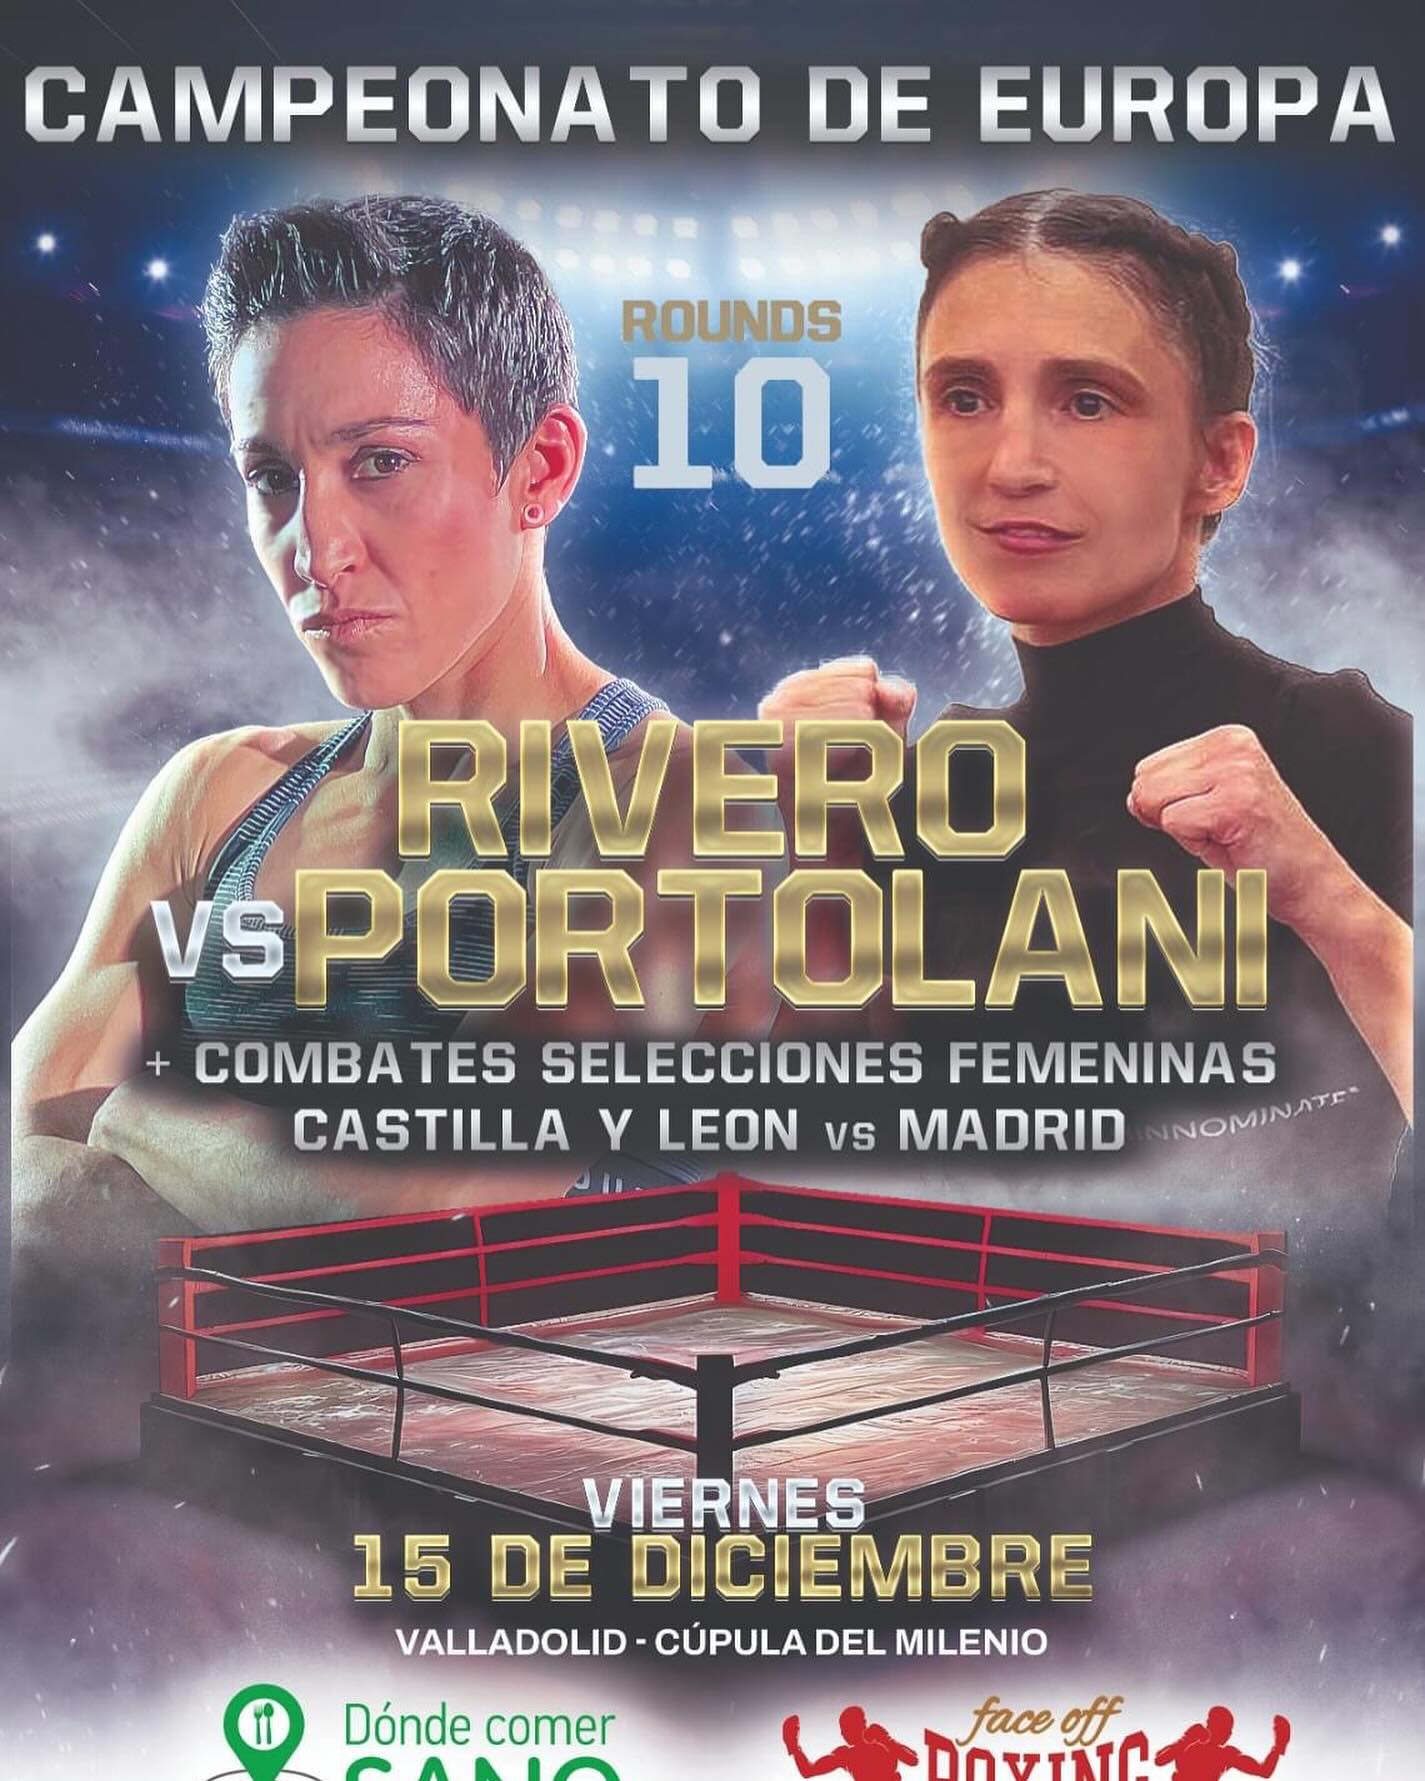 Il 15 dicembre a Valladolid la Portolani vs la Rivero per la Cintura Europea Pesi Paglia